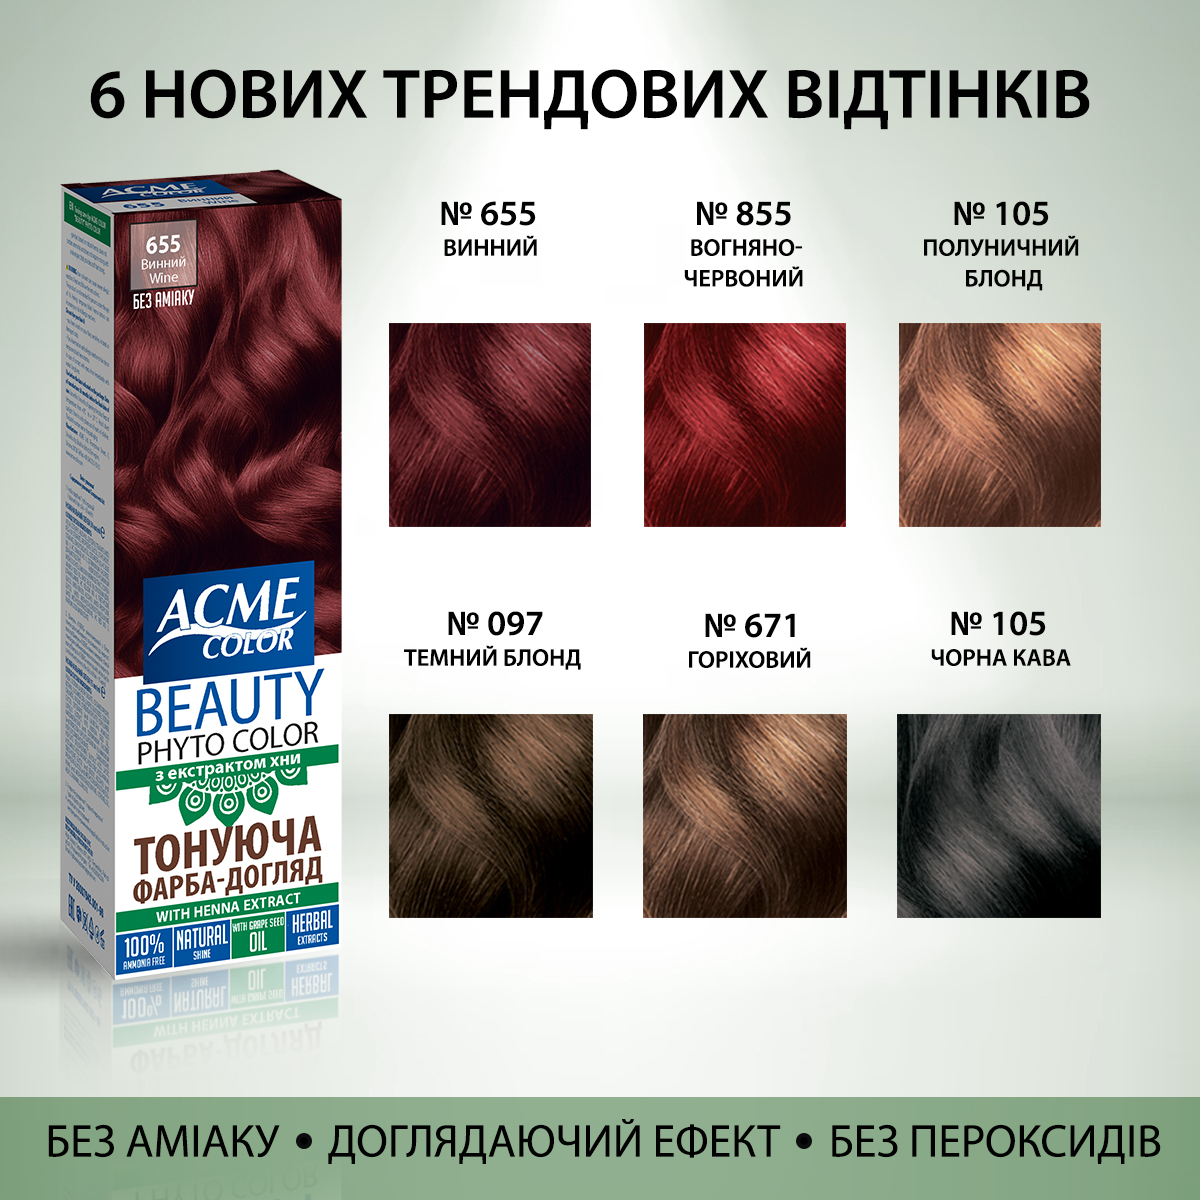 Гель-краска Acme Color Beauty Phyto Color, тон 105, клубничный блонд, 60 мл - фото 5